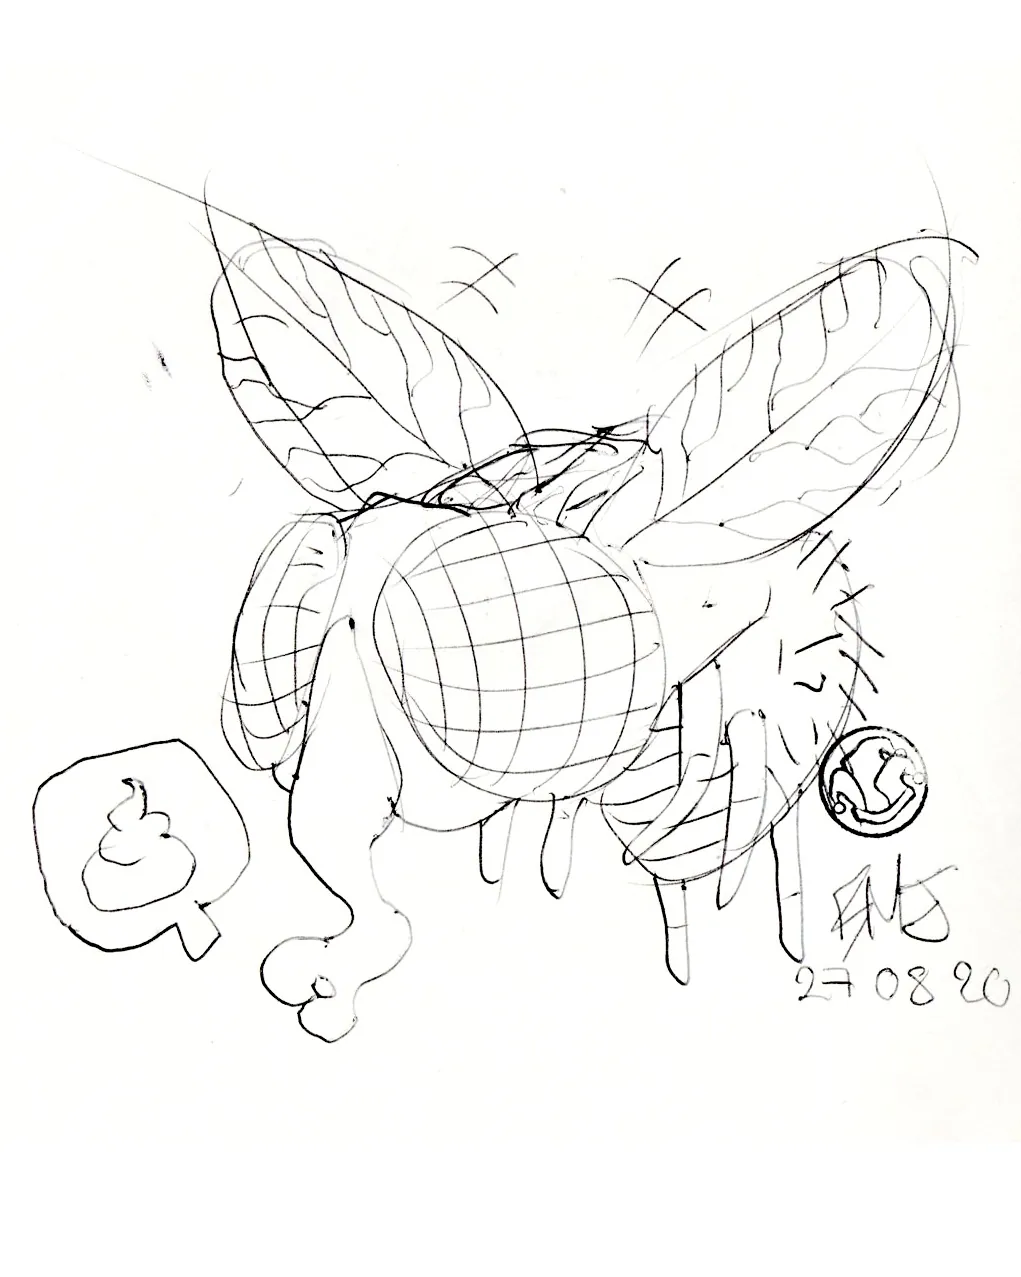 le zoli dessin « Zoubi la mouche » que j'ai bilouté le 27 août 2020